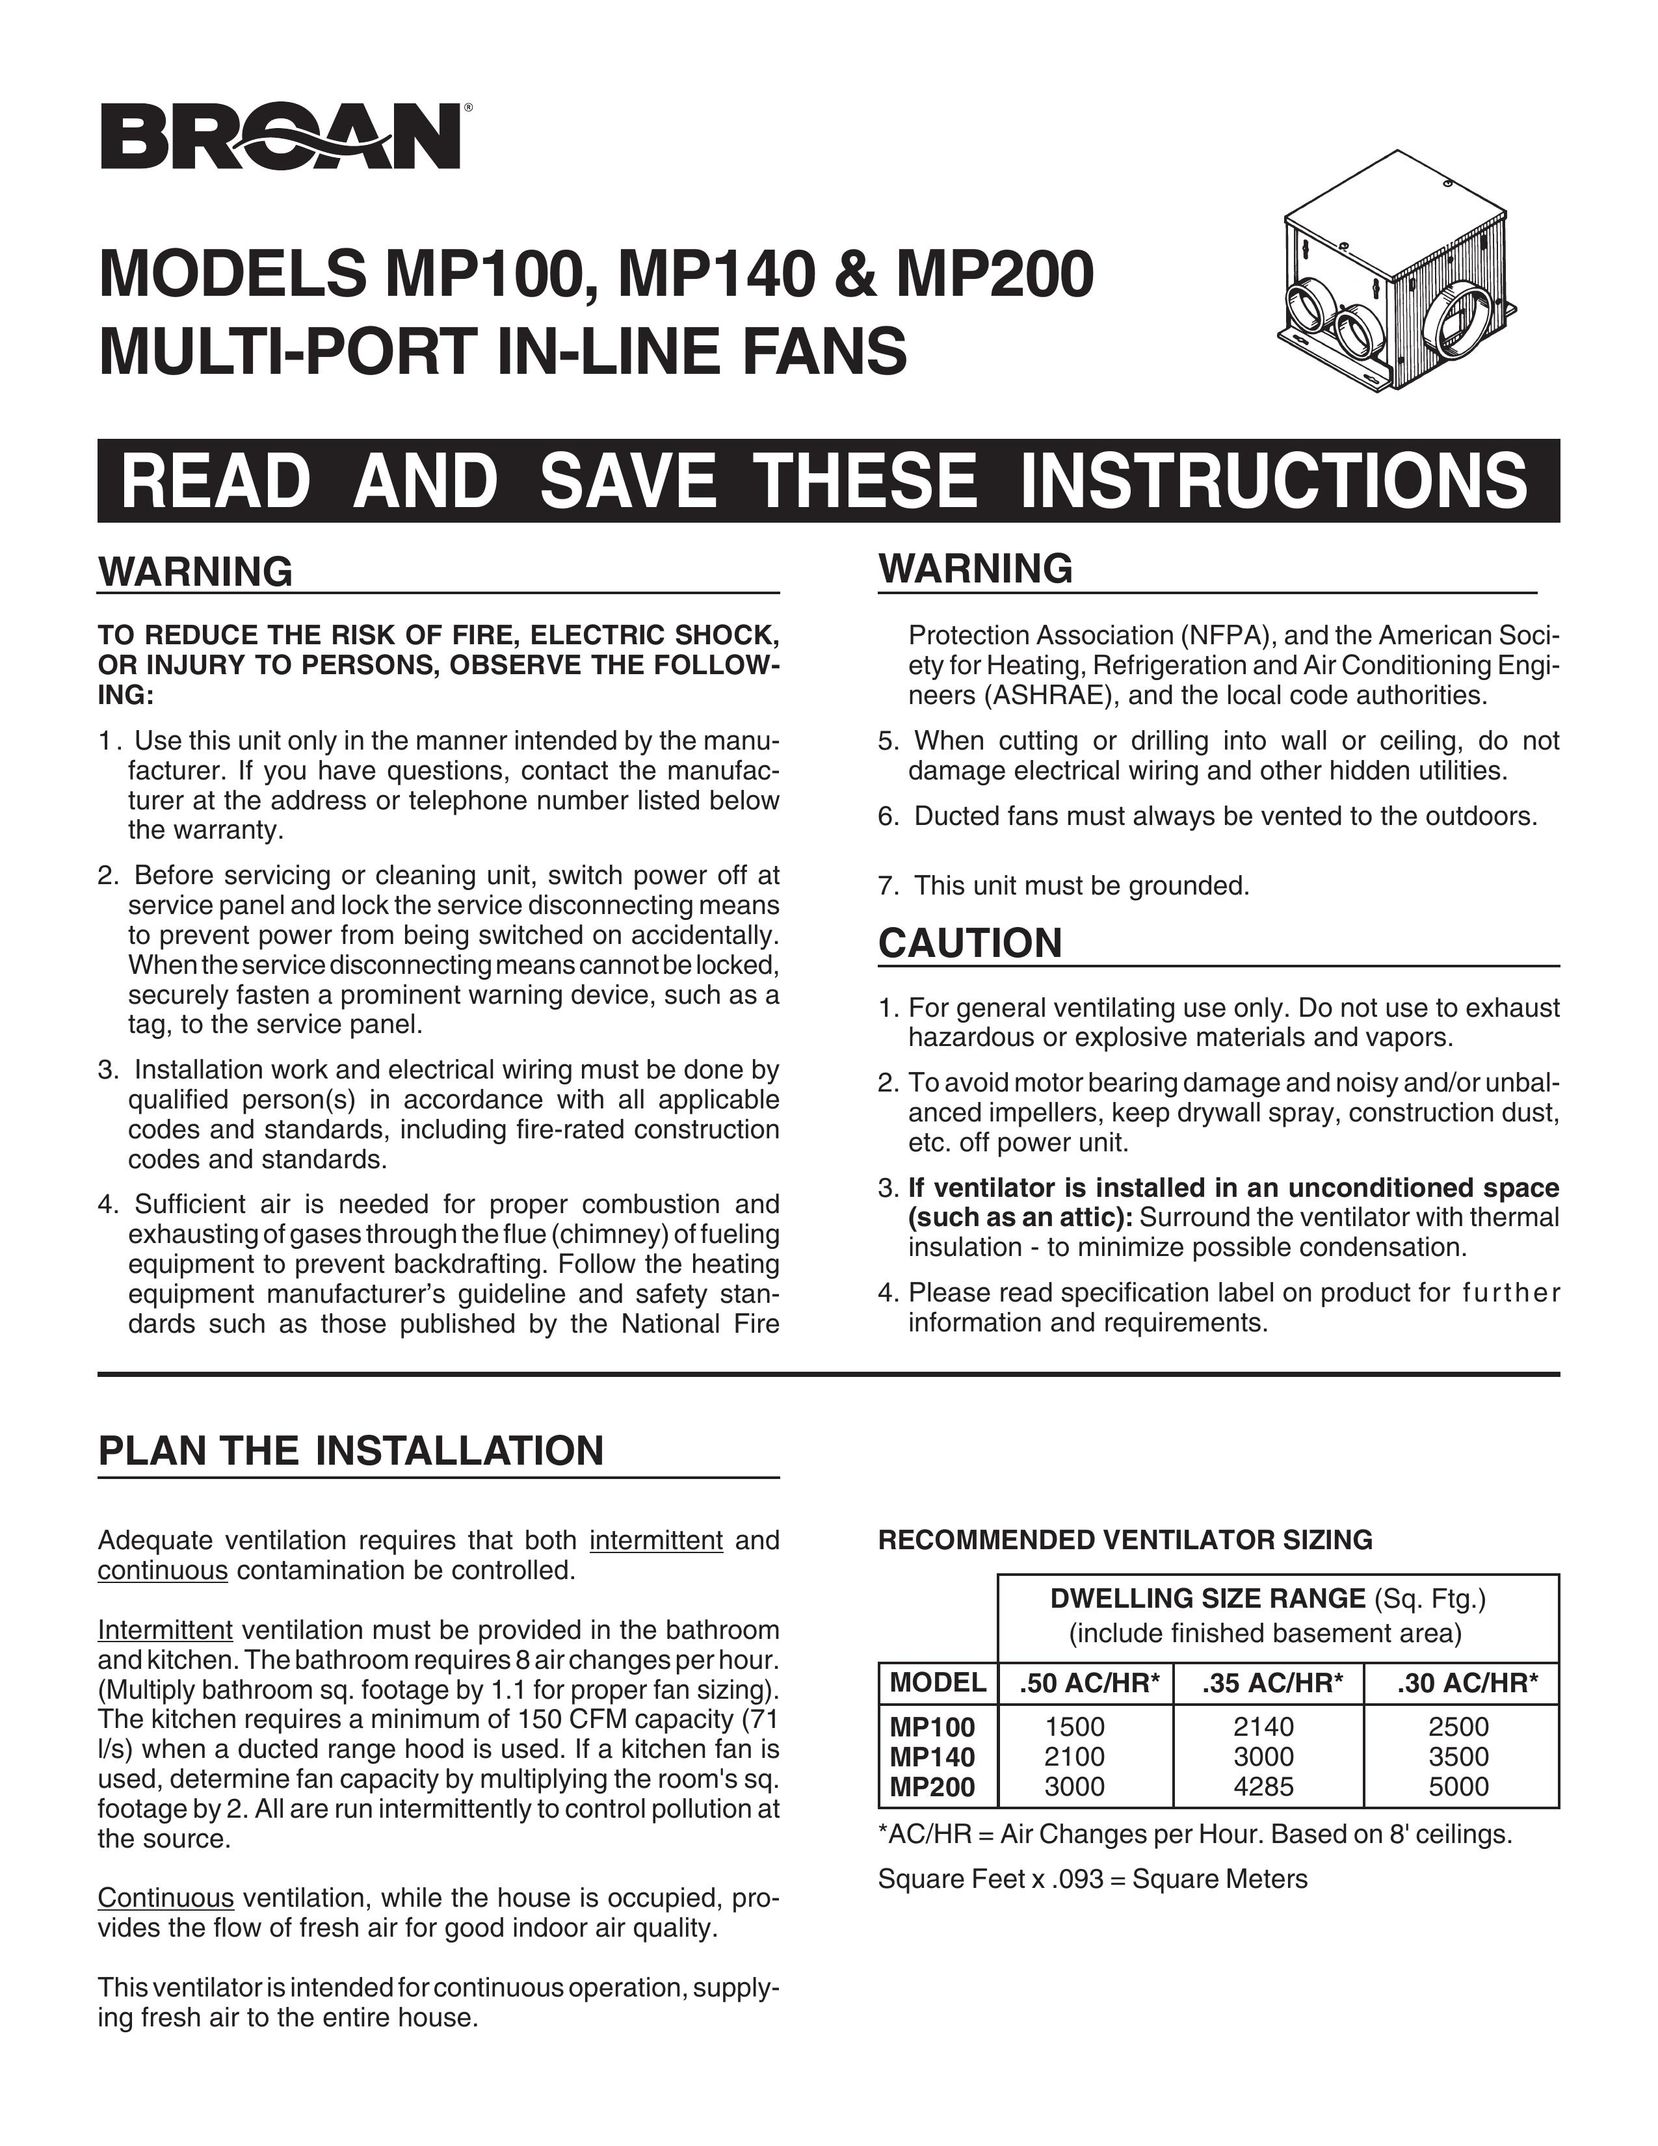 Broan MP140 Fan User Manual